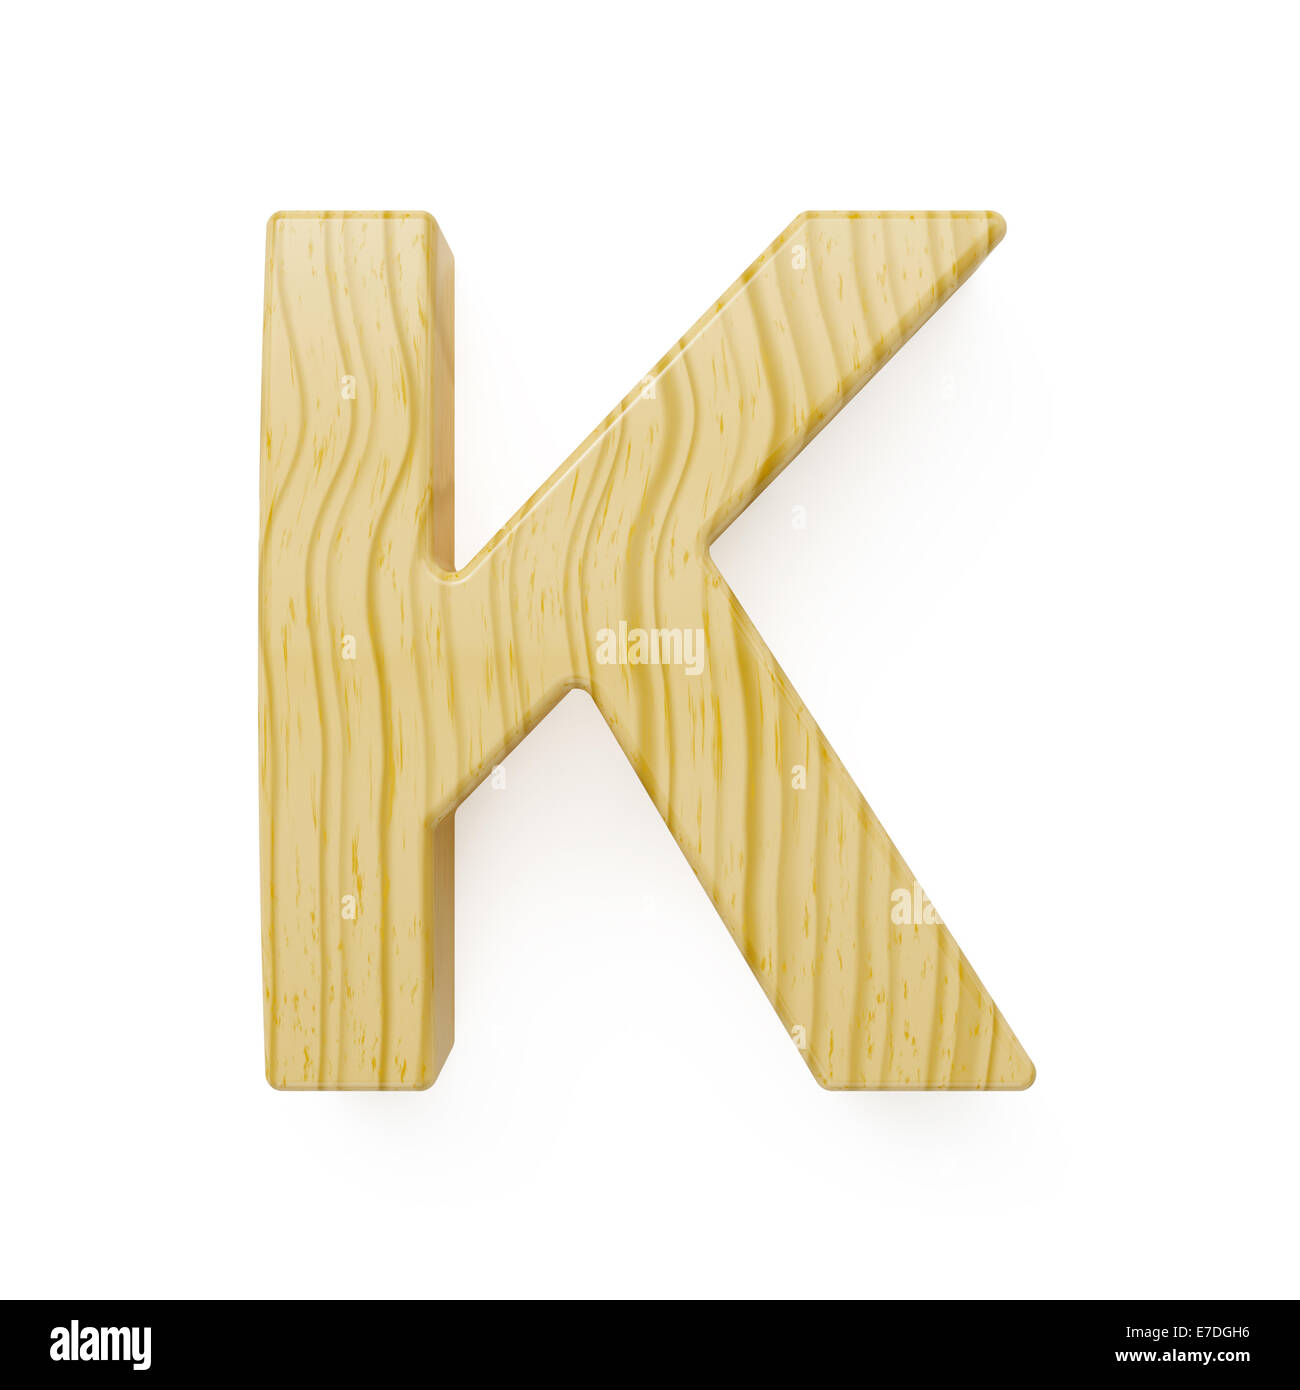 Wood alphabet letter symbol - K. Isolated on white background Stock Photo